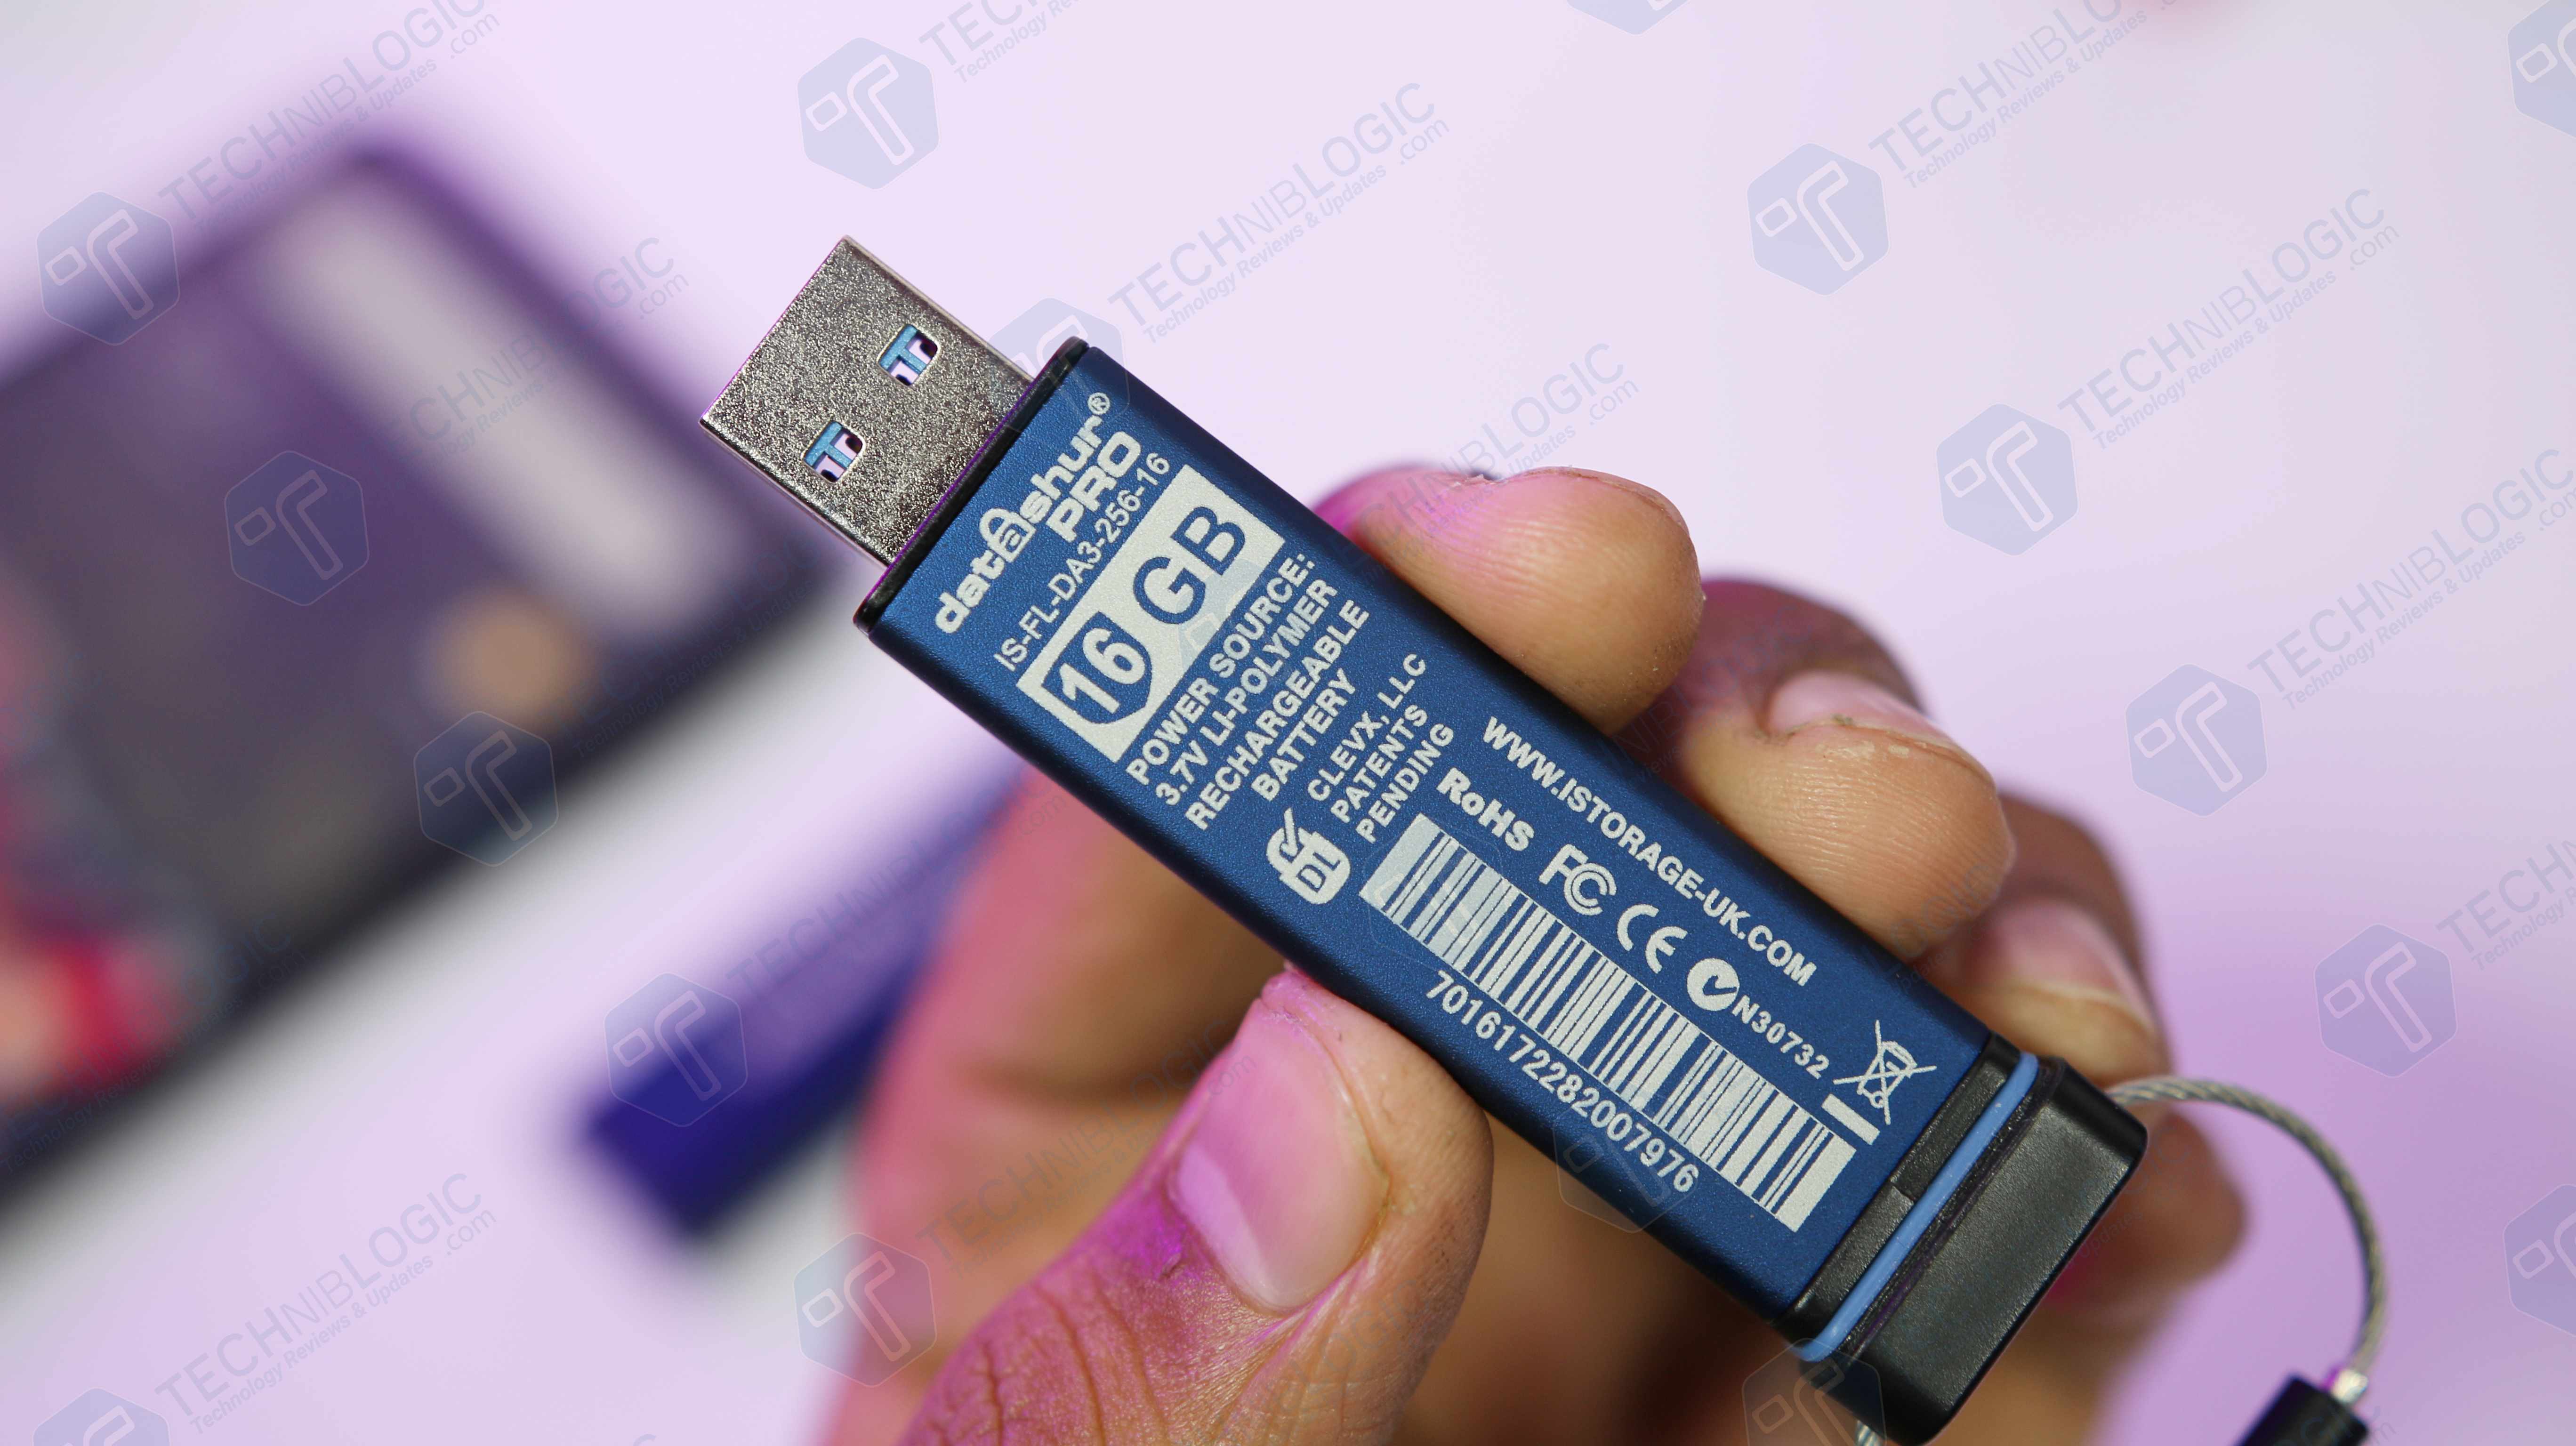 iStorage datAshur Pro USB 3.0 Flash Drive